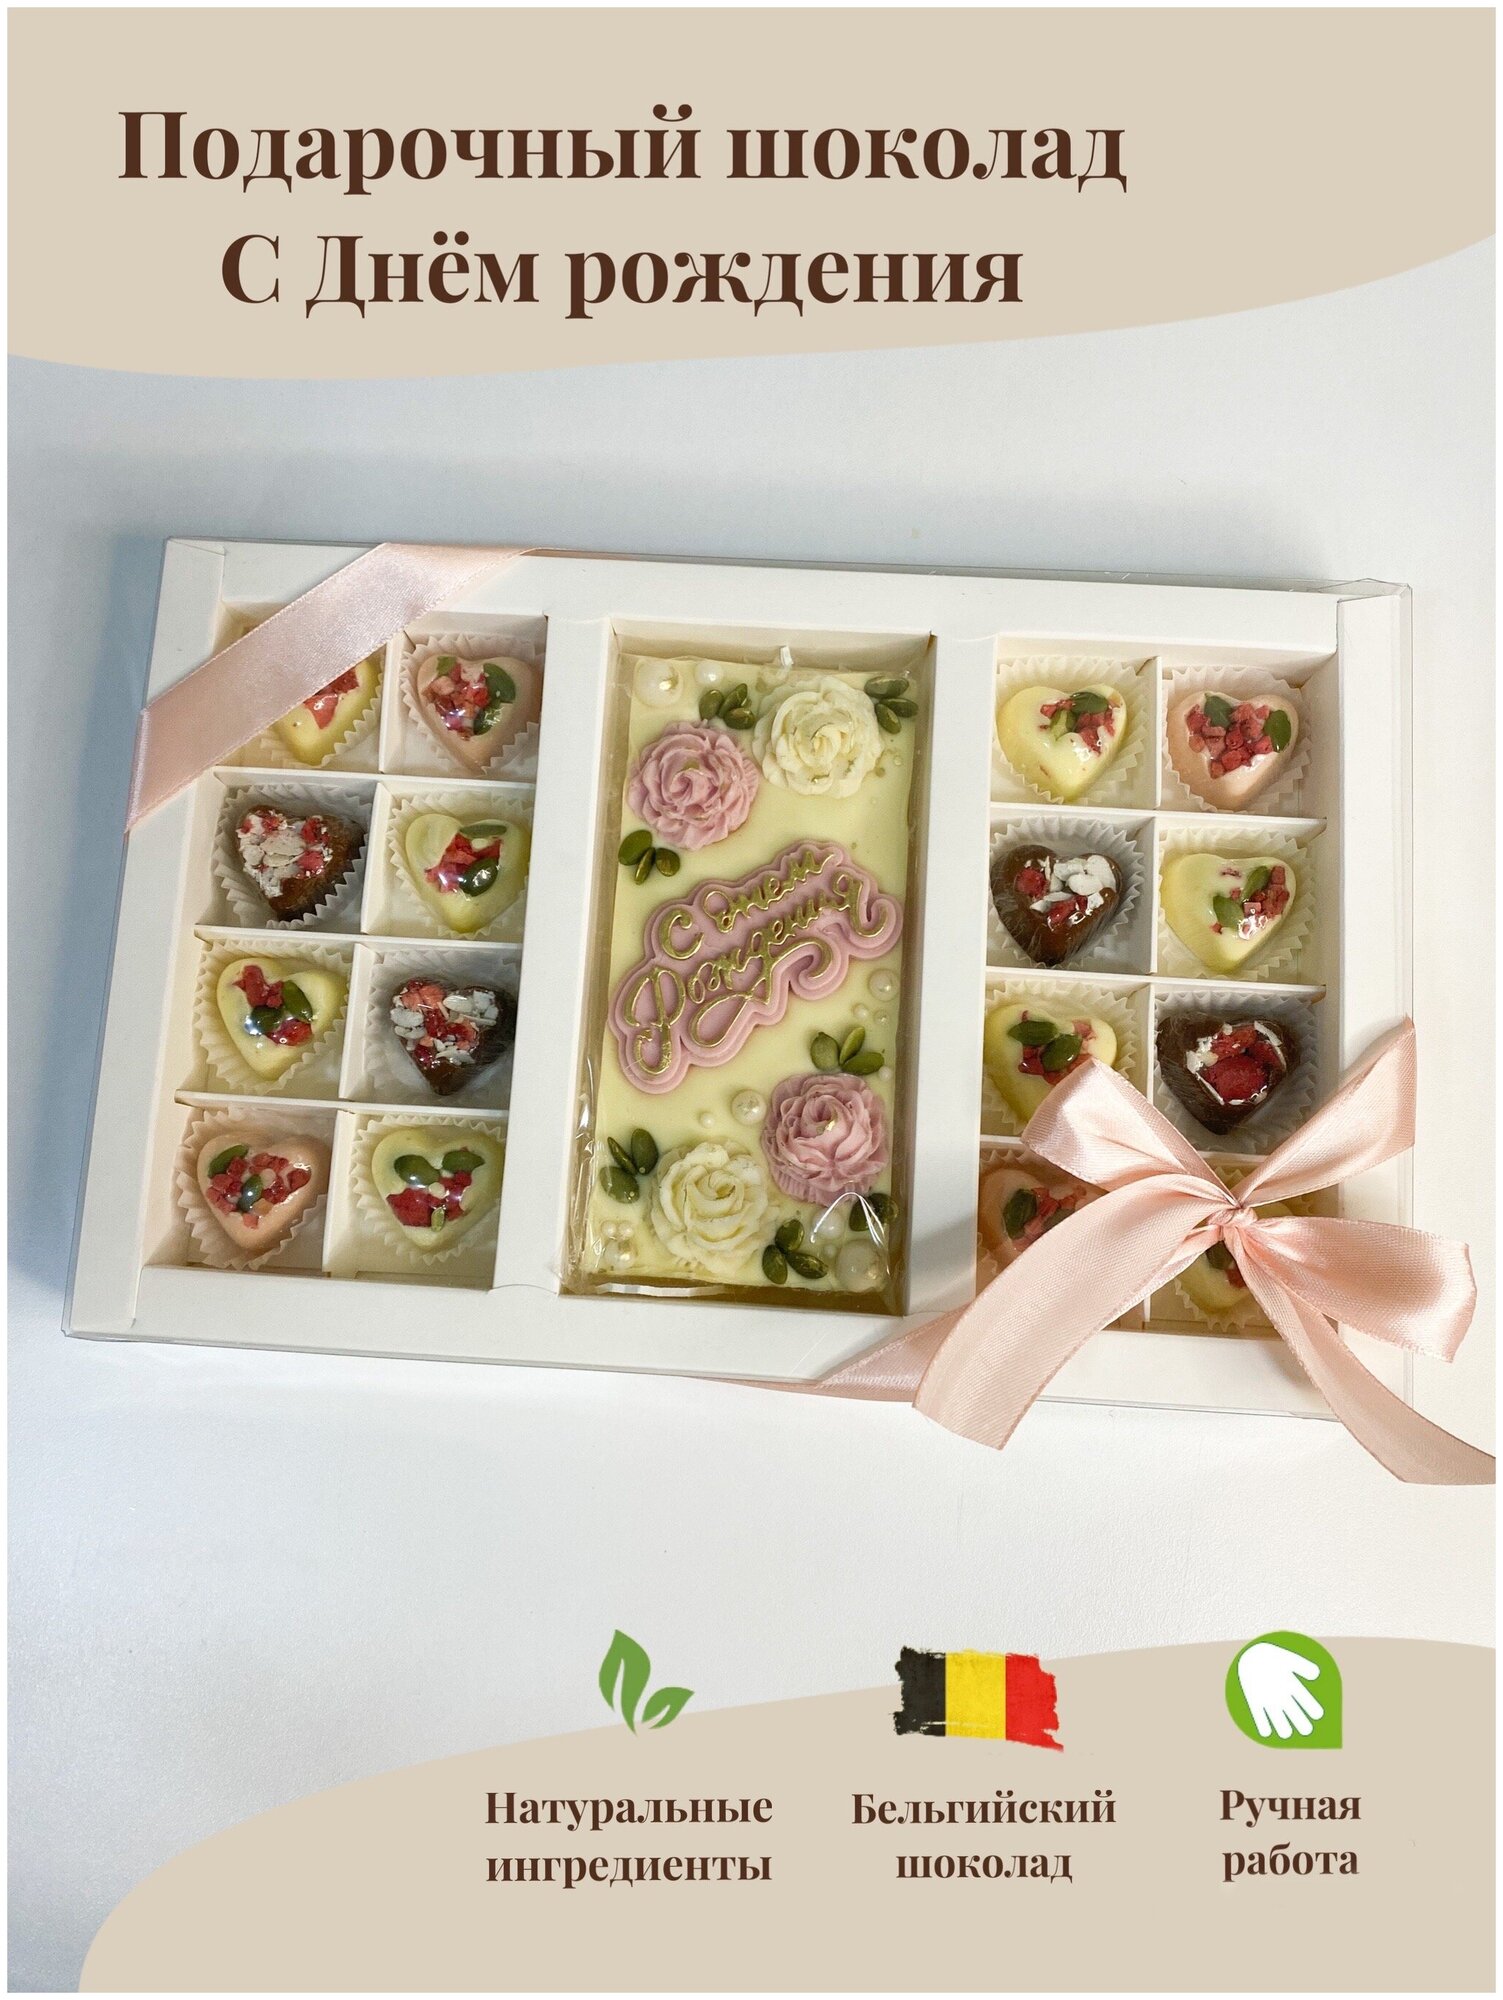 Бельгийский белый и молочный шоколад, поздравительный набор "С днем рождения", подарок, Kpfoodo - фотография № 1